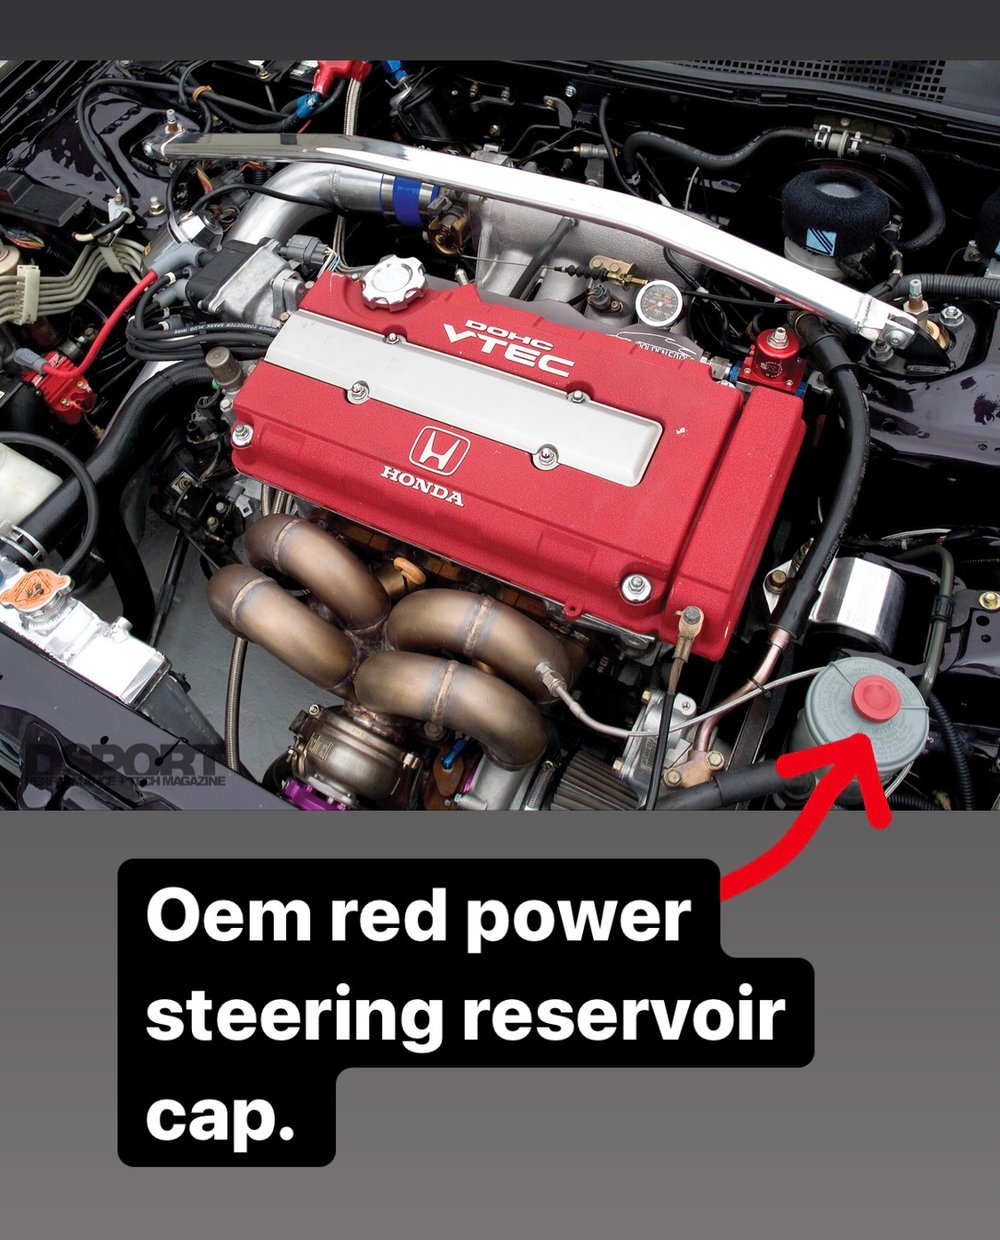 Honda titanium power steering reservoir cap